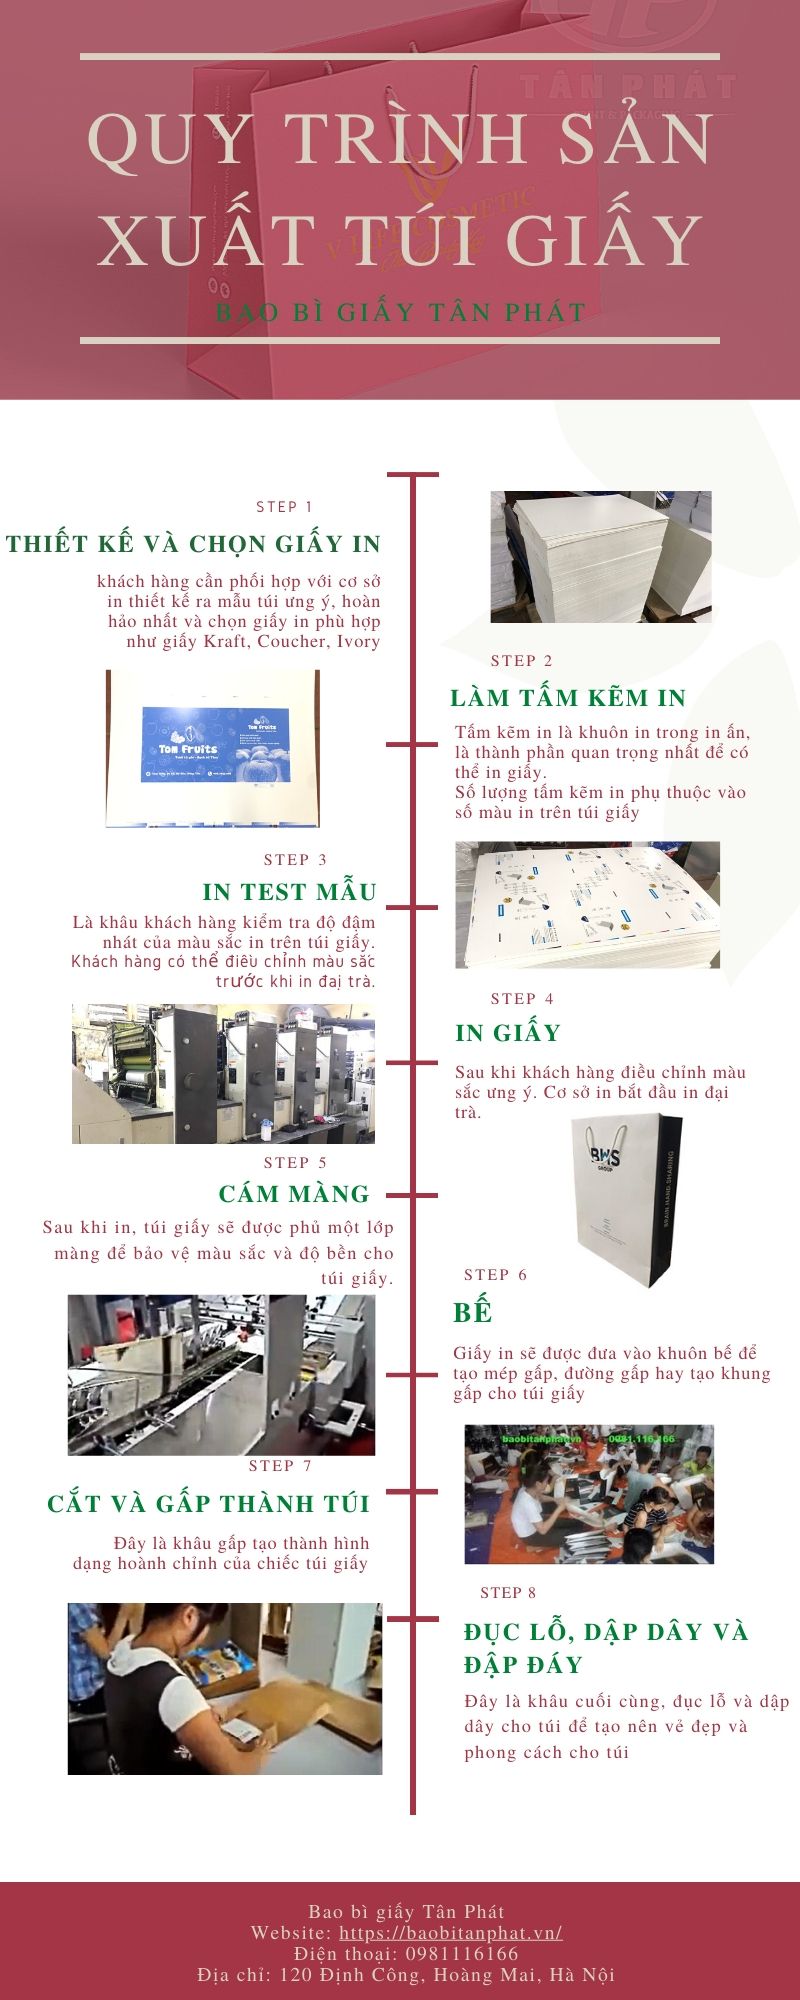 Quy trình sản xuất túi giấy Bao bì giấy Tân Phát